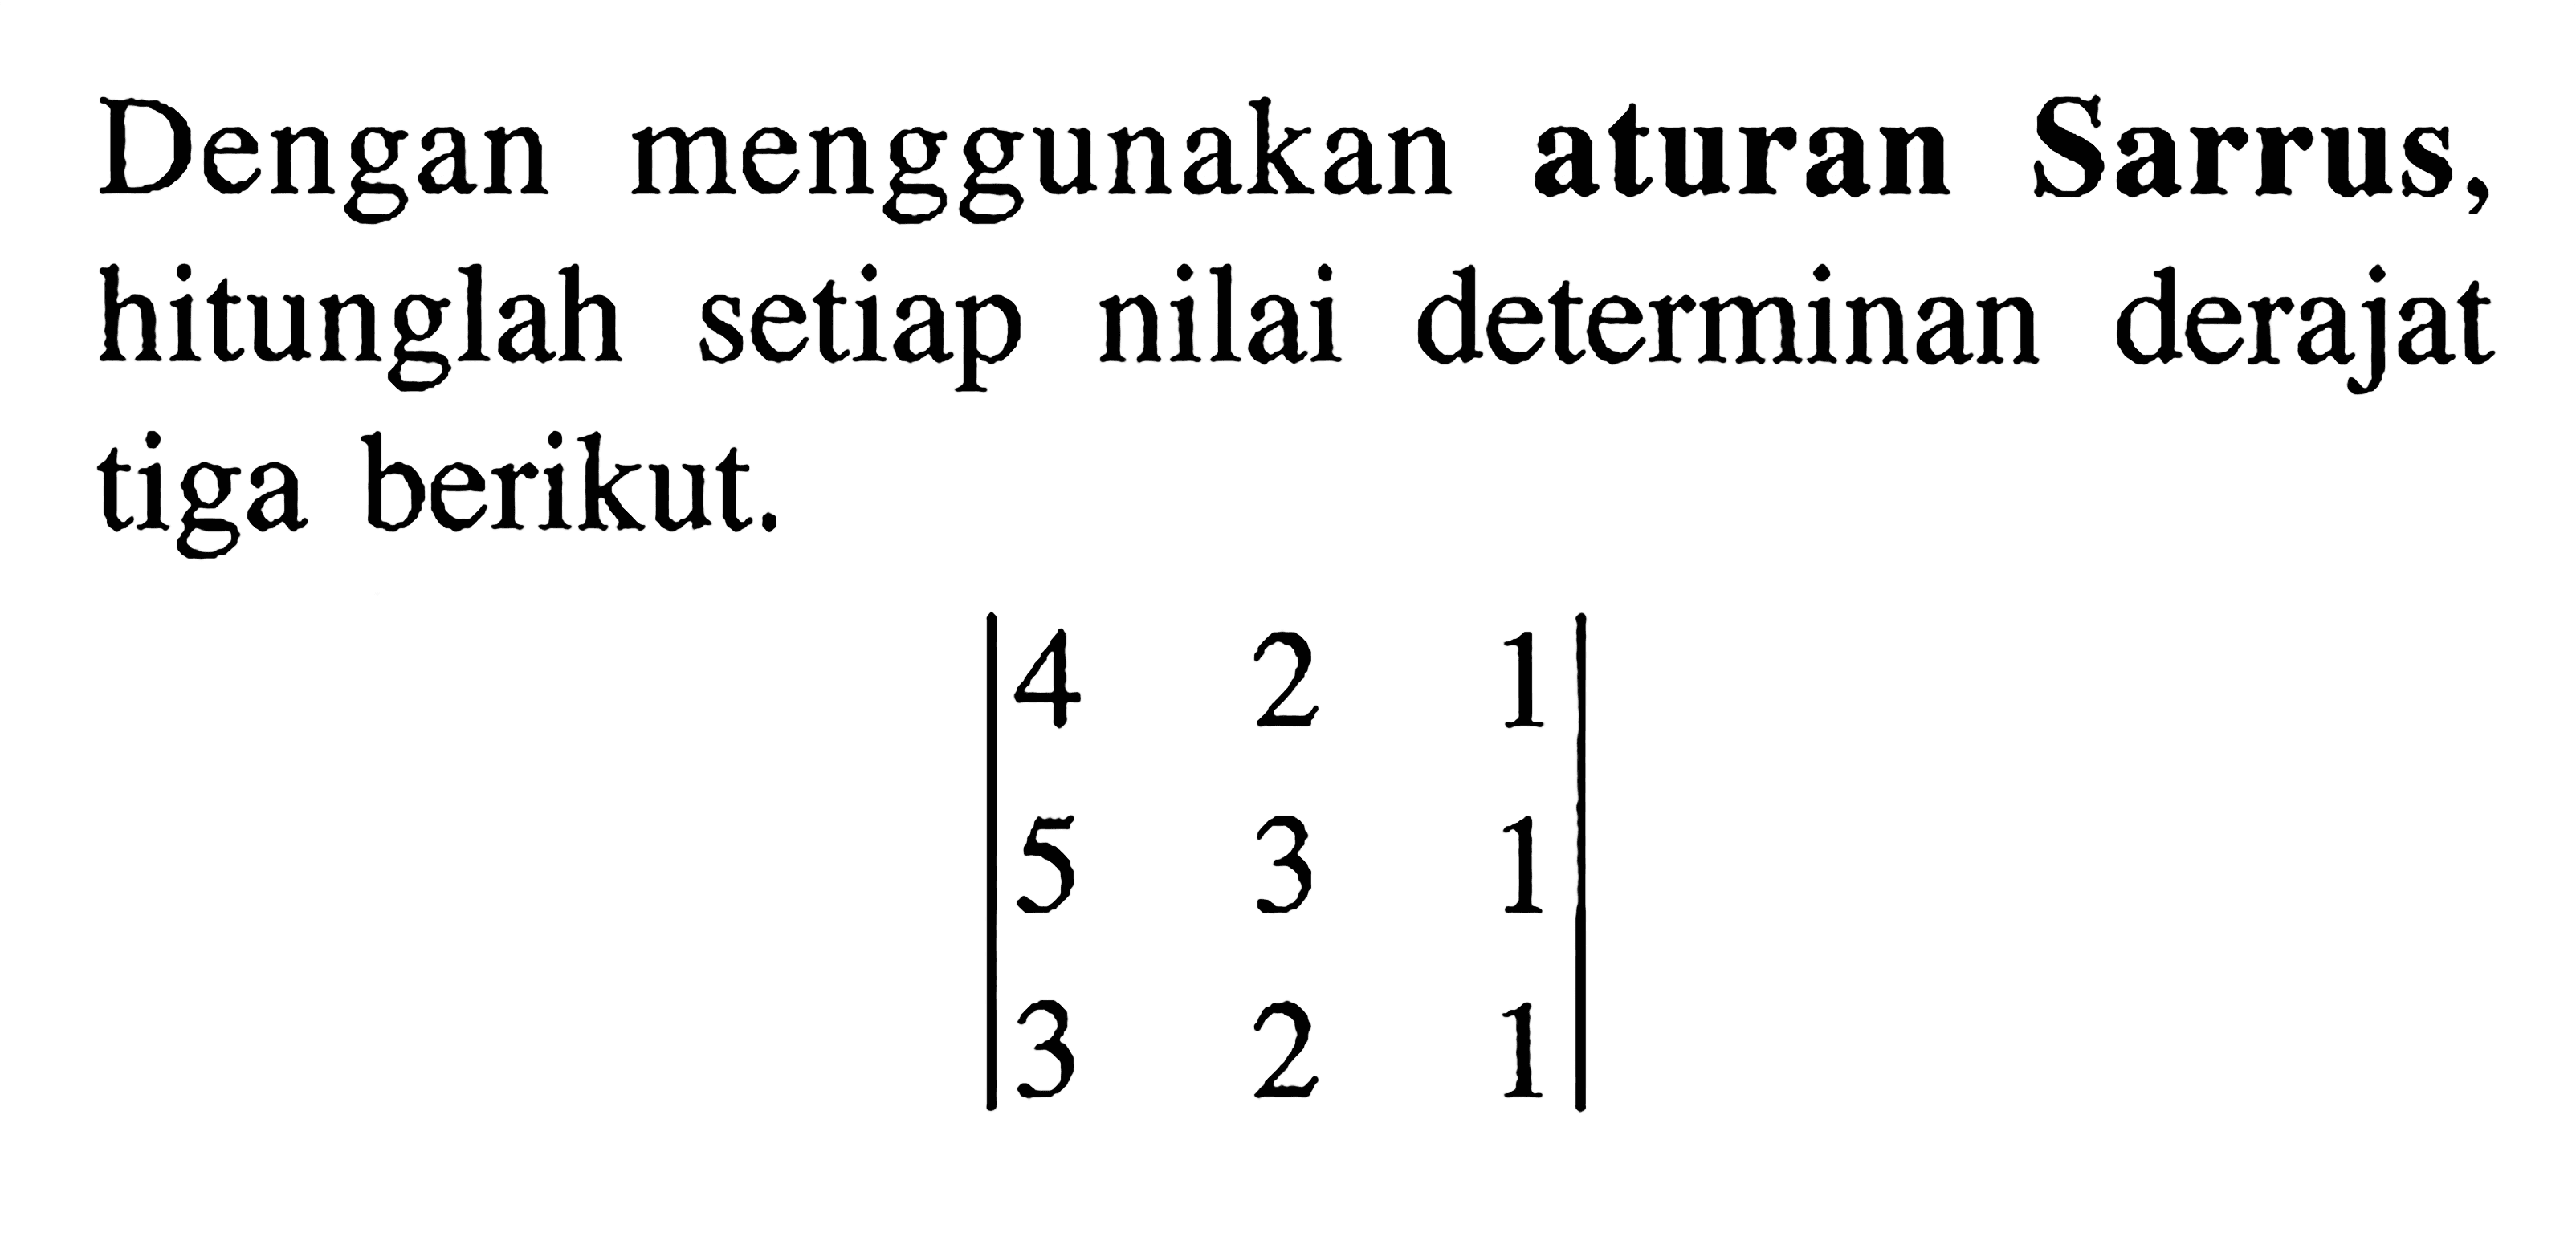 Dengan menggunakan aturan Sarrus, hitunglah setiap nilai determinan derajat tiga berikut. |4 2 1 5 3 1 3 2 1|